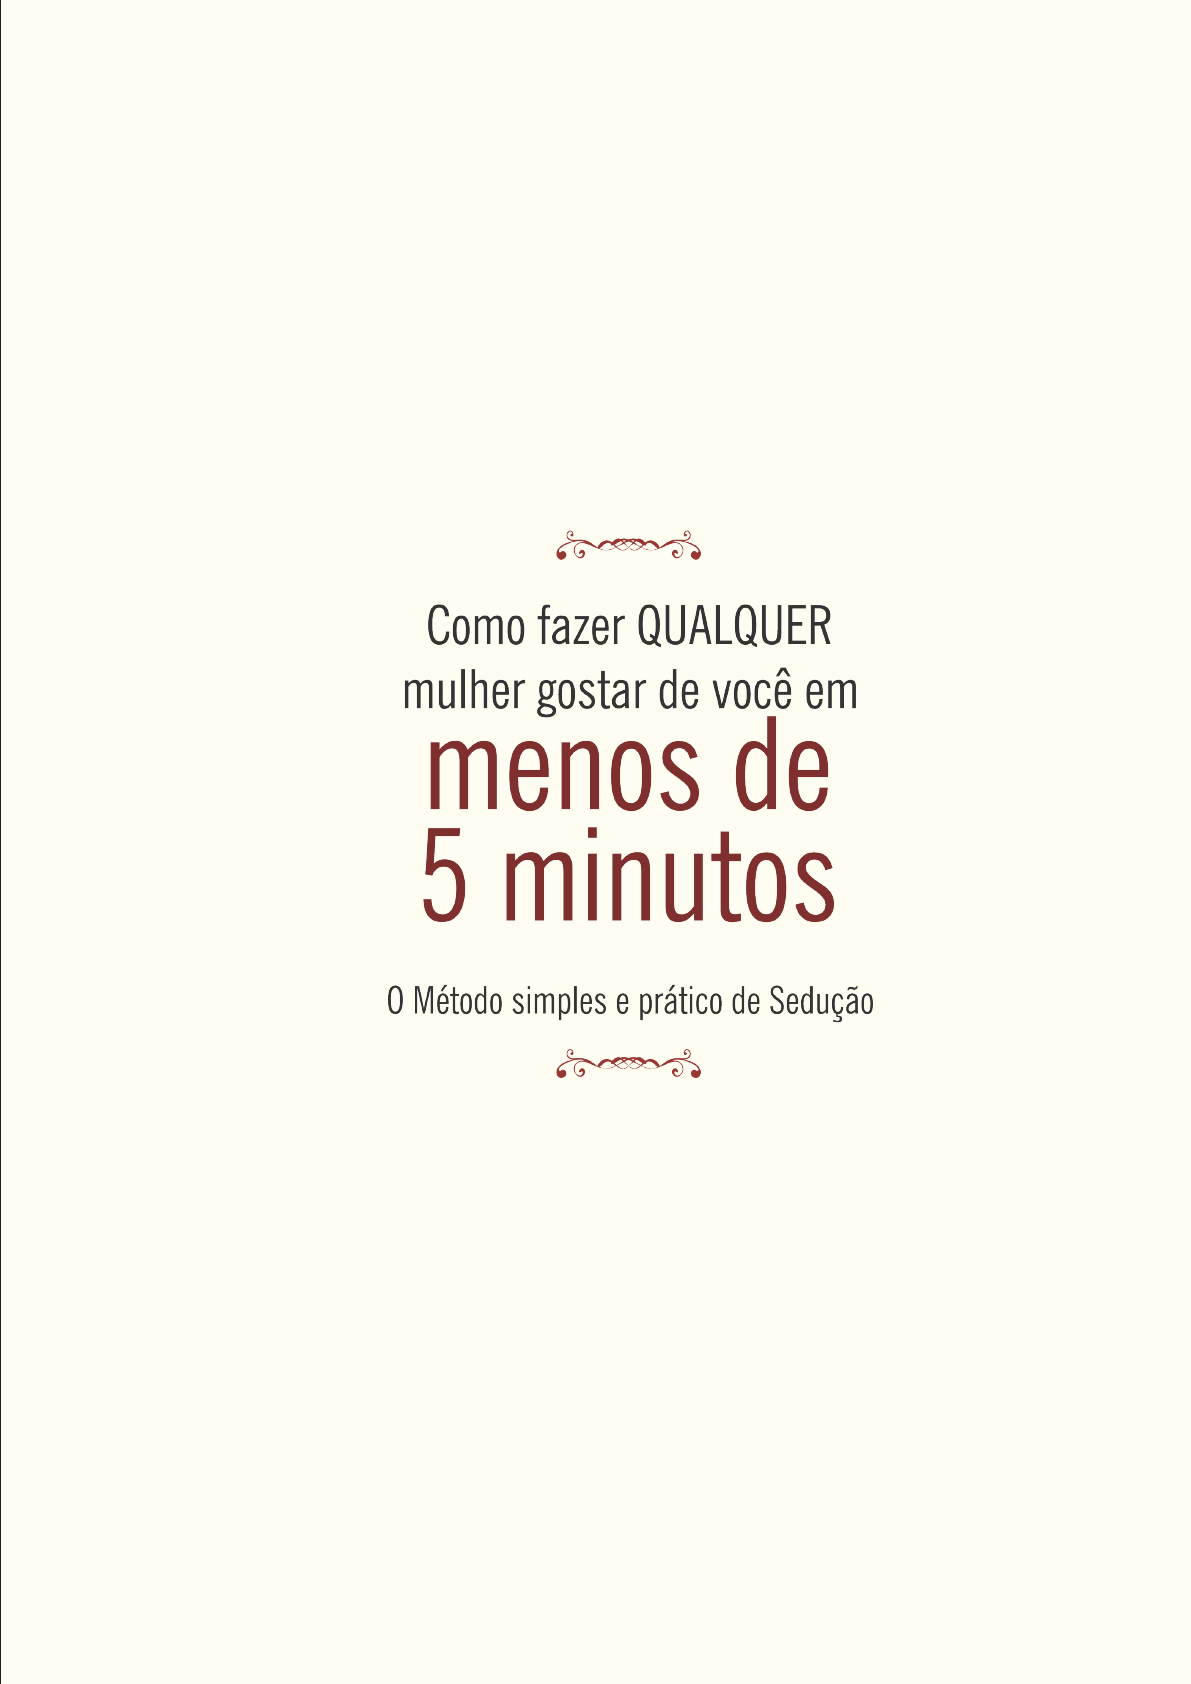 pdfcoffee com comosermotivado-pdf-free - Português